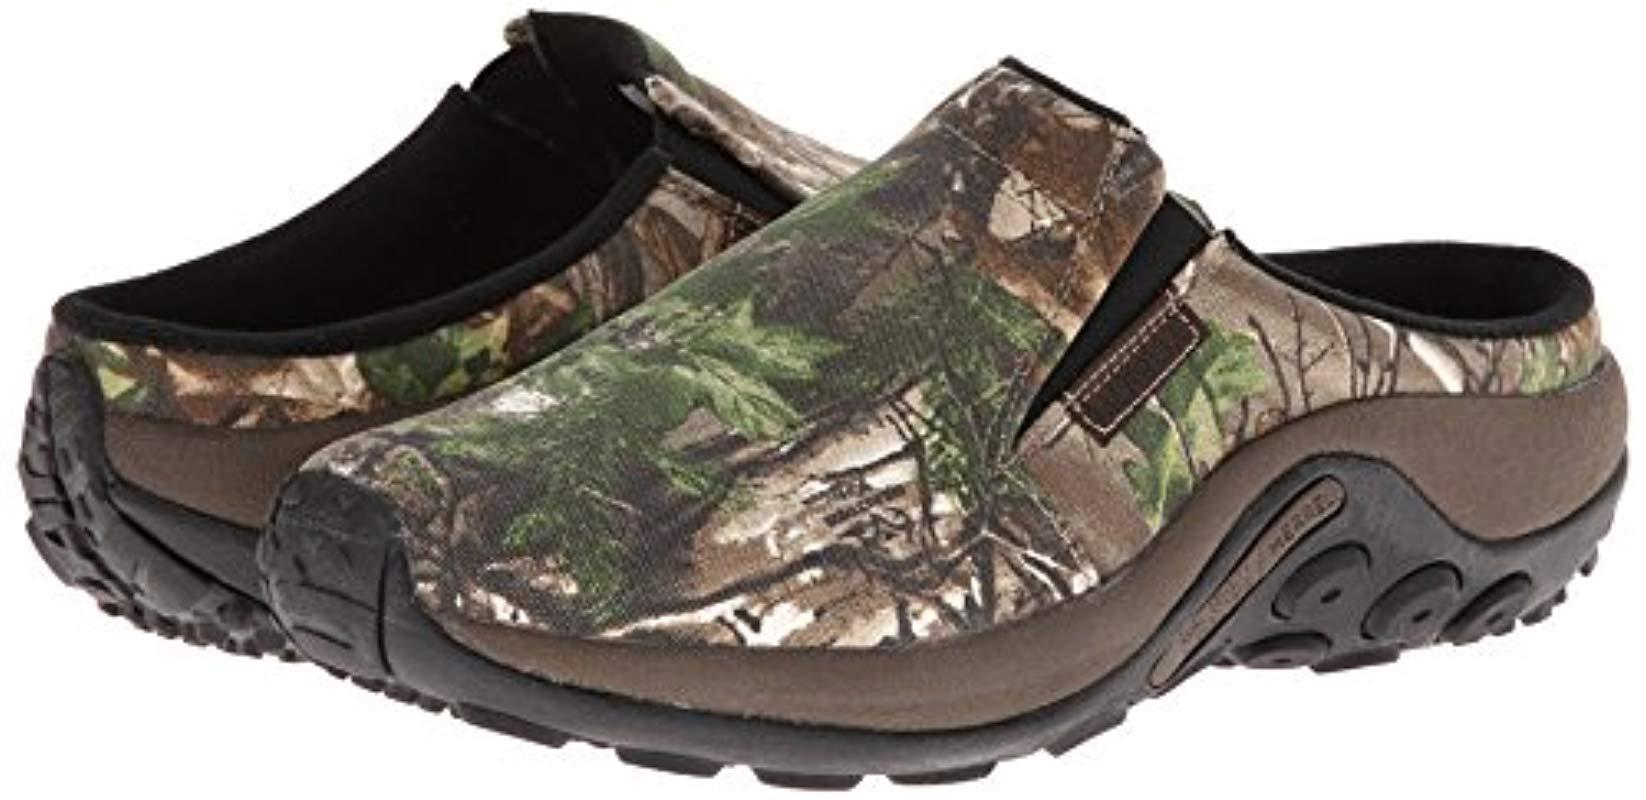 Merrell Jungle Slide Camo Slip-on Shoe for Men - Lyst